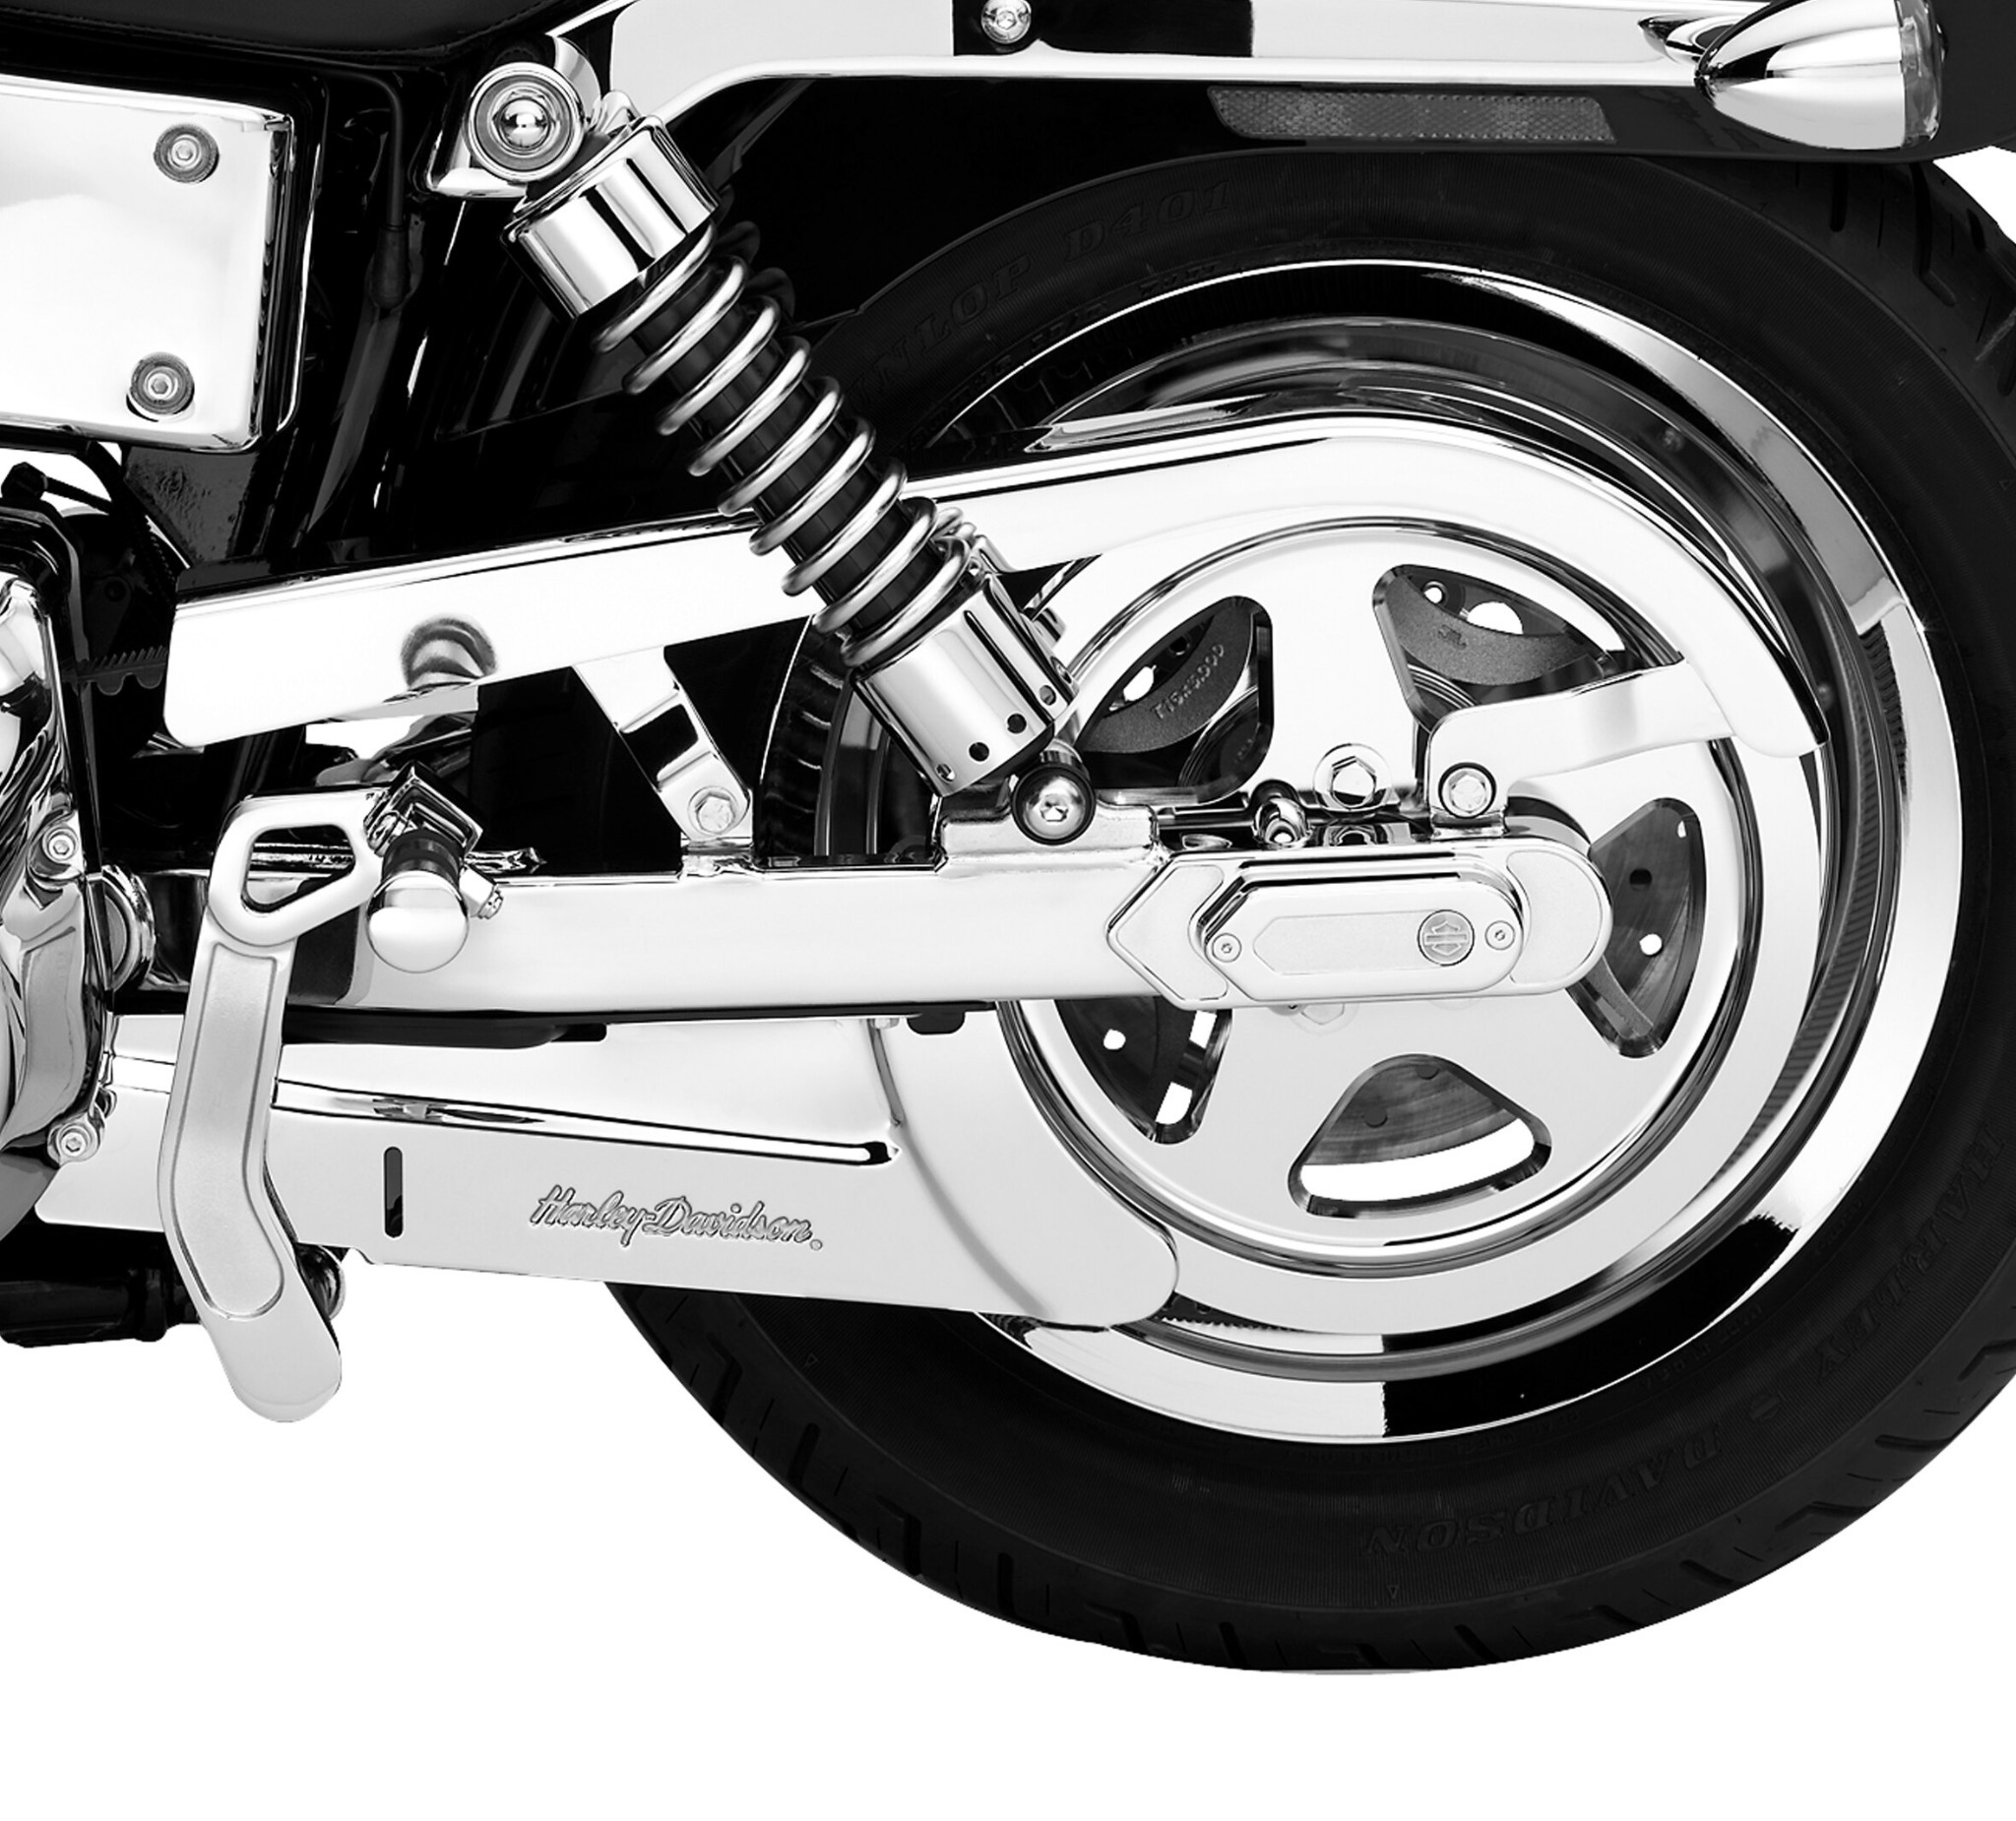 60533-00 Upper Rear Belt Guard For Harley-Davidson 2000-20 ea Chrome